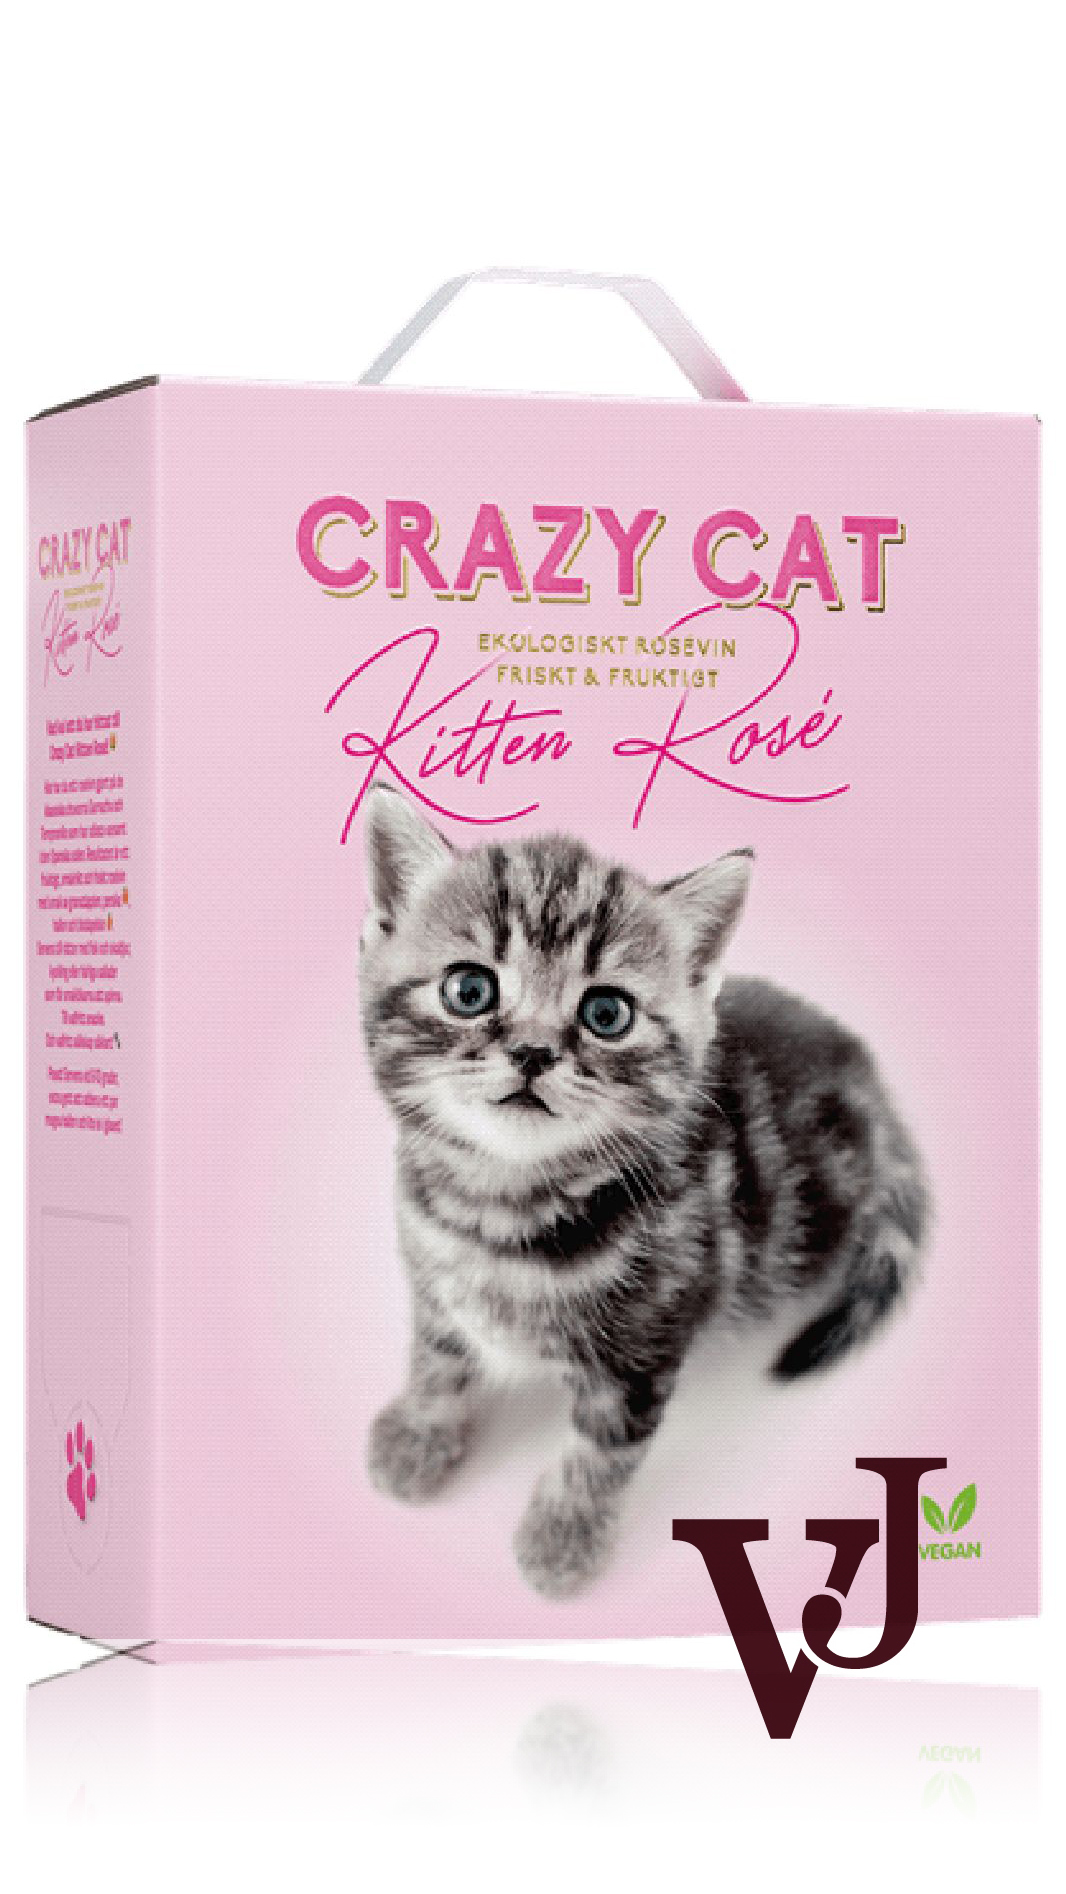 Rosé Vin - Crazy Cat Kitten Rosé Organic 2022 artikel nummer 5199408 från producenten Vinimundi från området Spanien